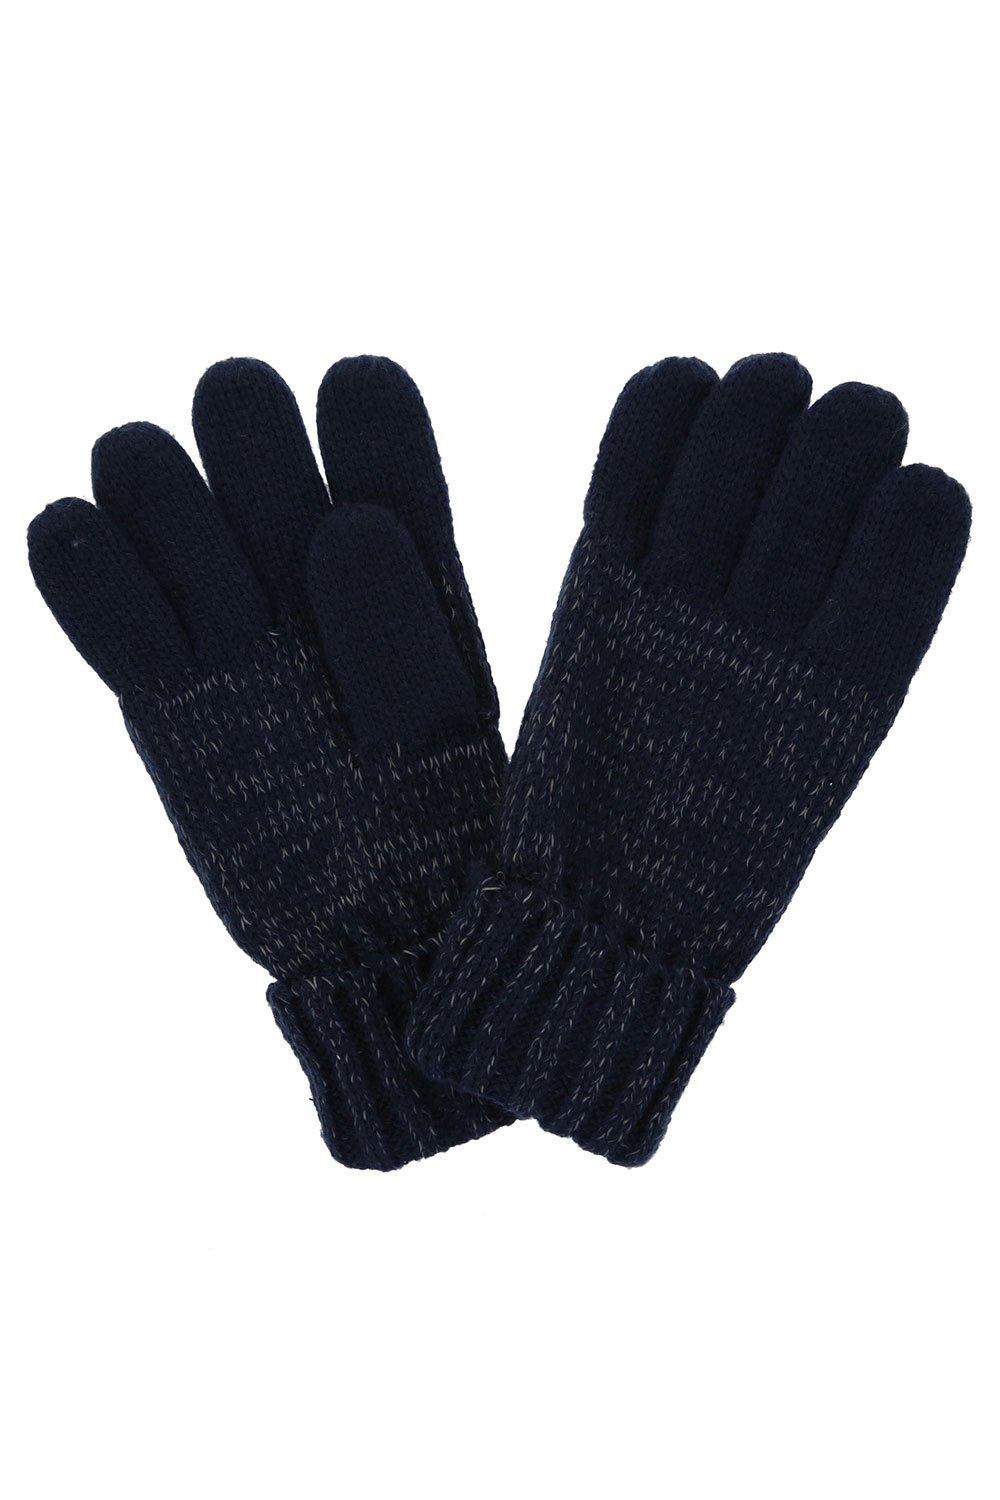 ’Luminosity’ Knit Winter Gloves